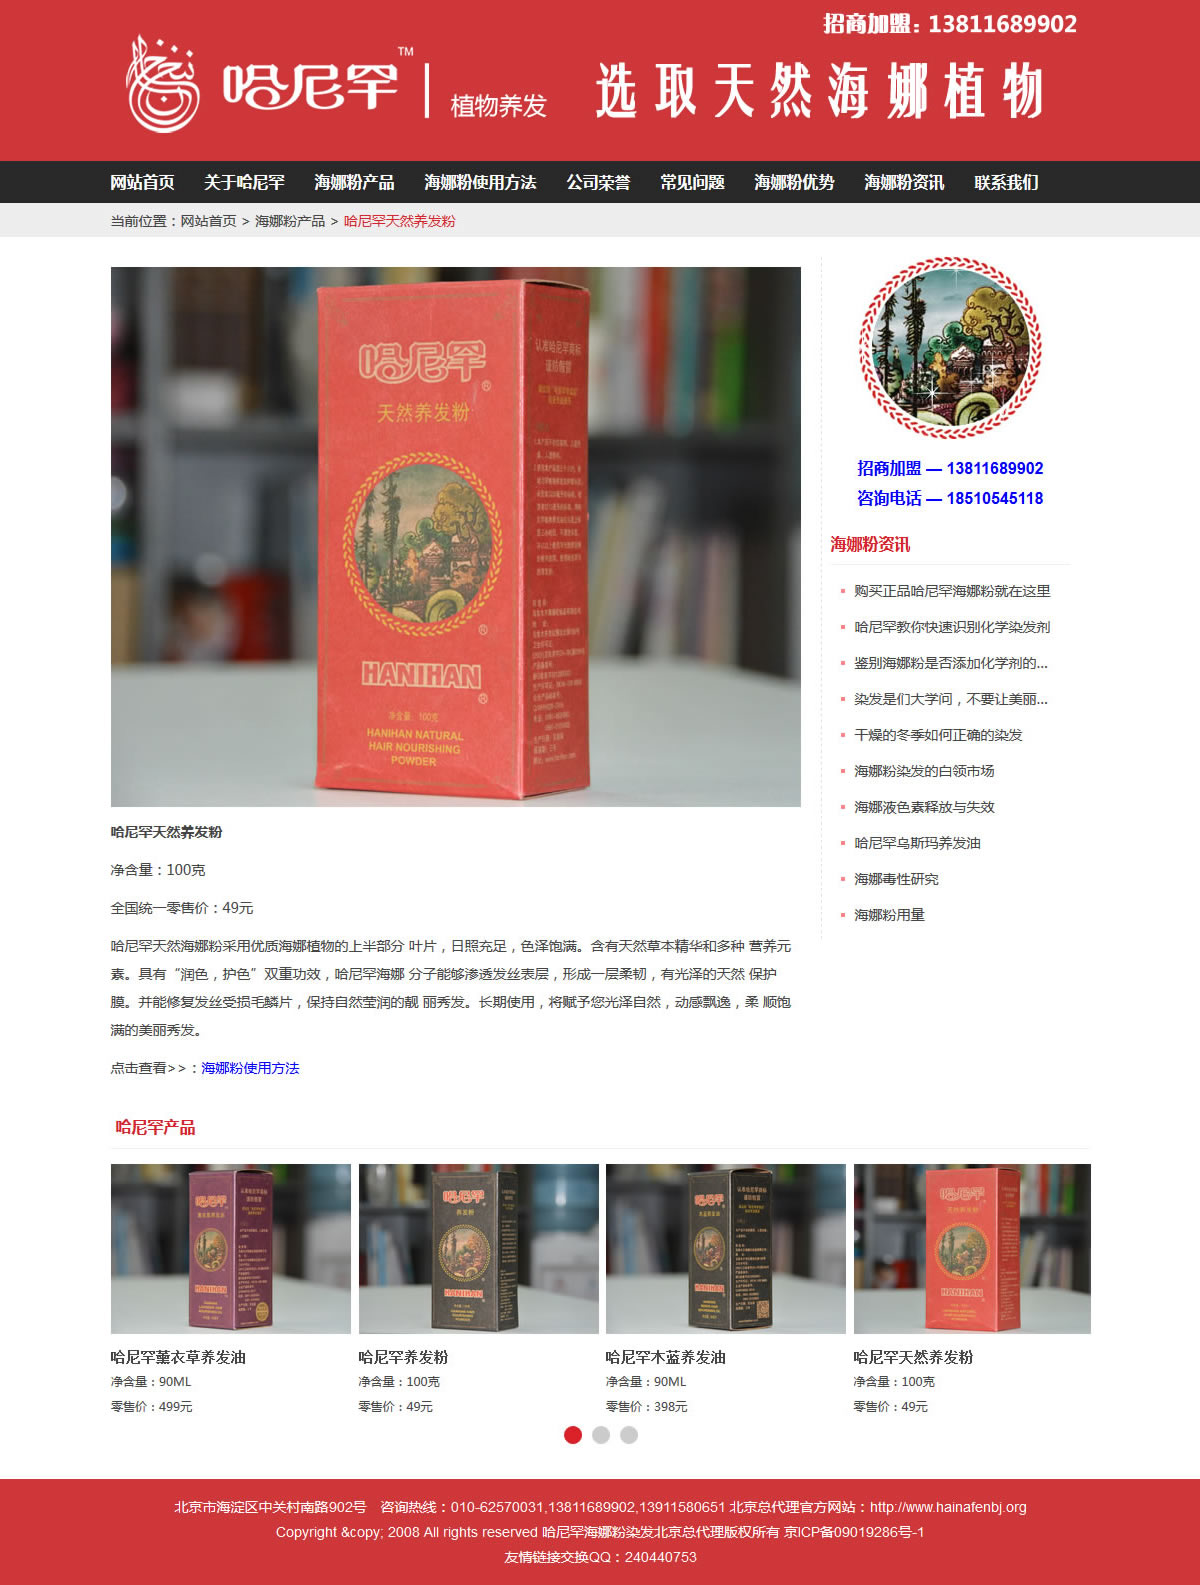 哈尼罕海娜粉北京总代理官网首页产品详情页